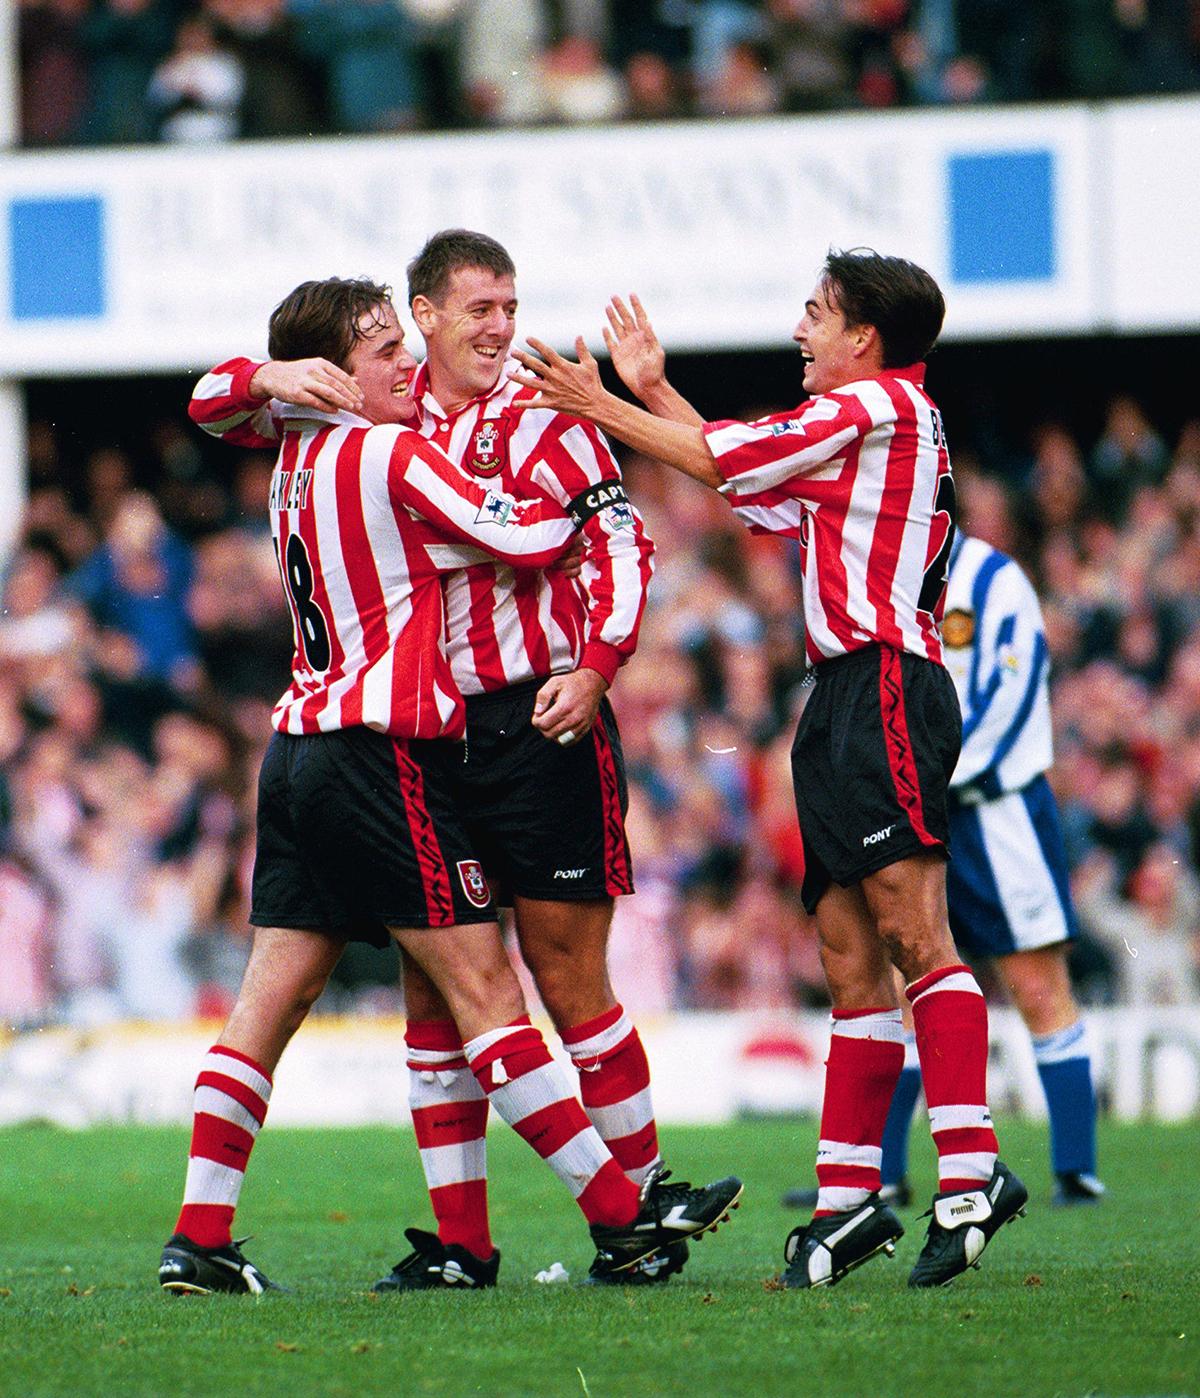 Premiership 1996/97 - Saints 6 Man Utd 3